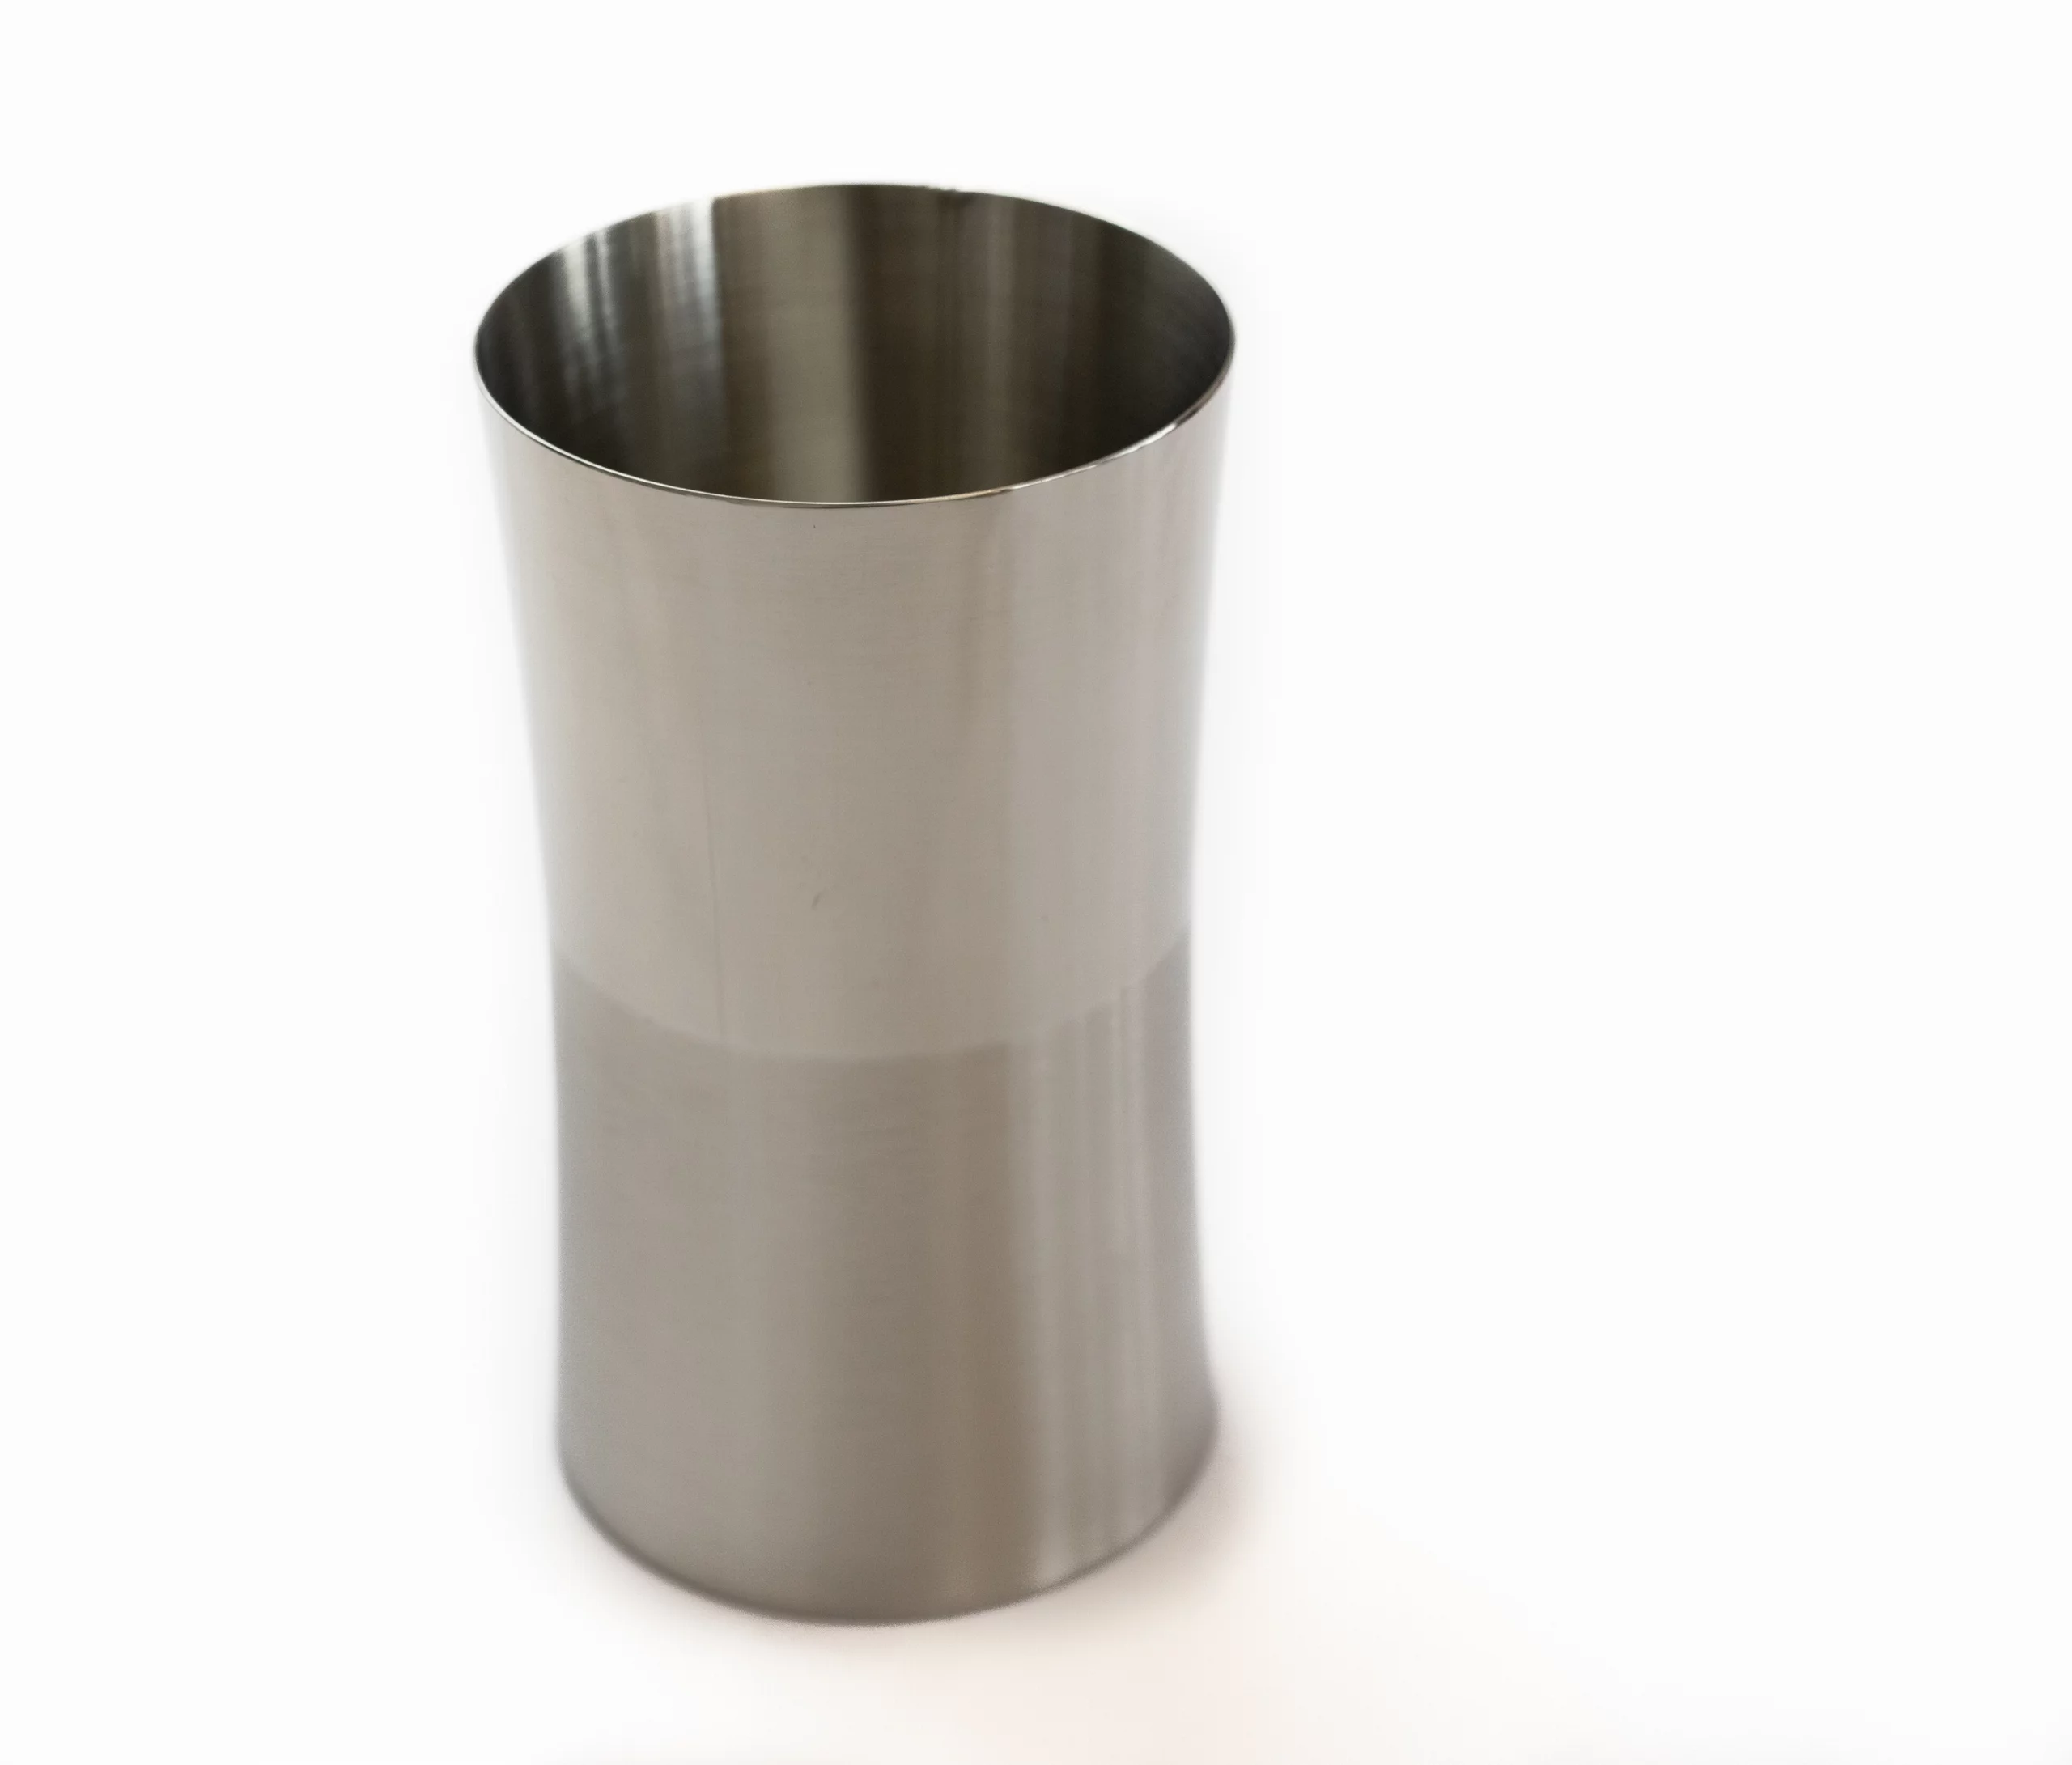 tandenborstel-beker-roestvrij-staal-6.5cm-diameter.-11.5cm-hoogte-zilver